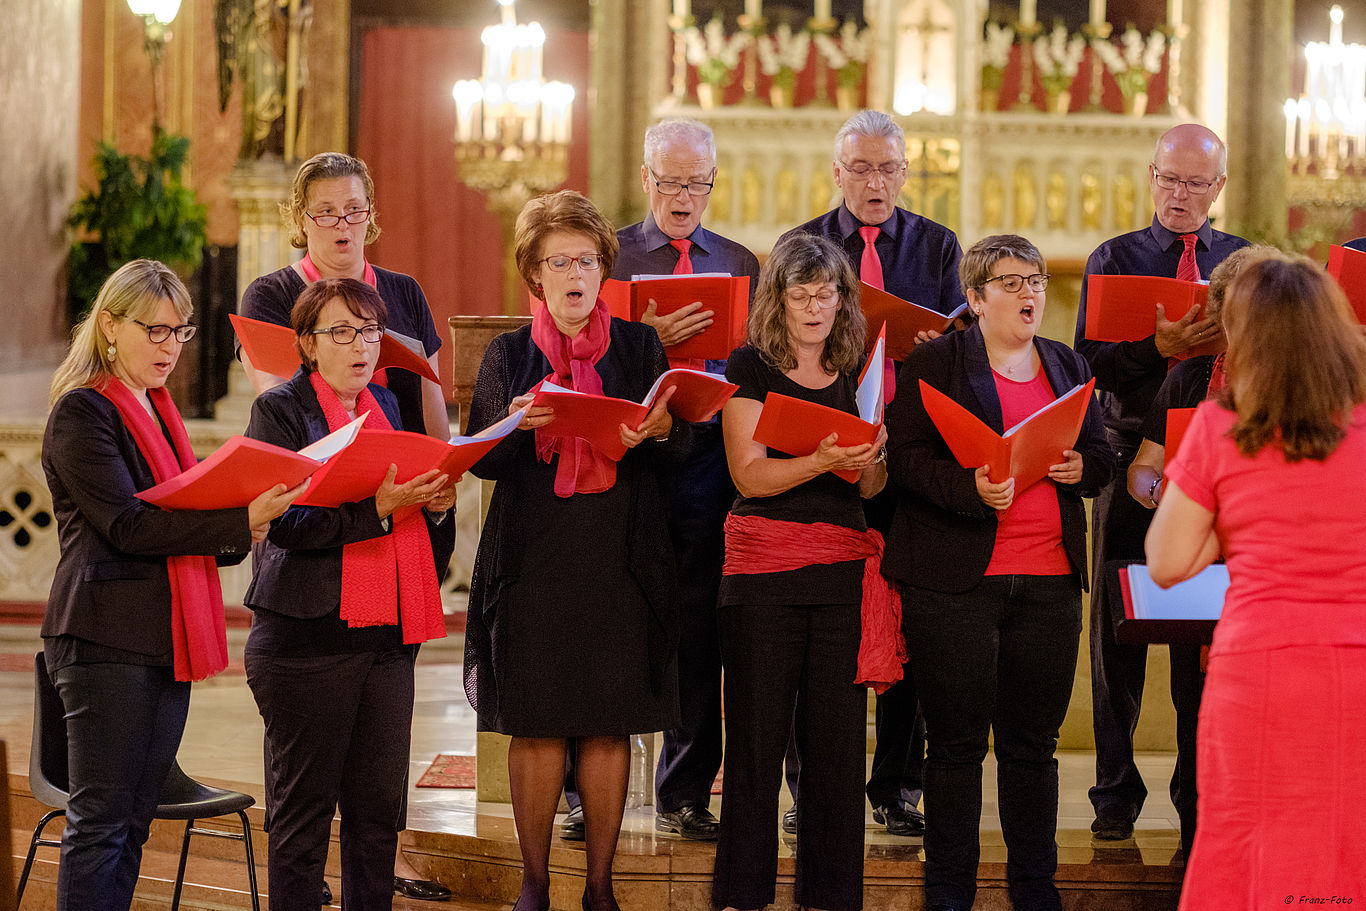 Mehrere Personen in schwarz-roter Kleidung singen gemeinsam als Chor.